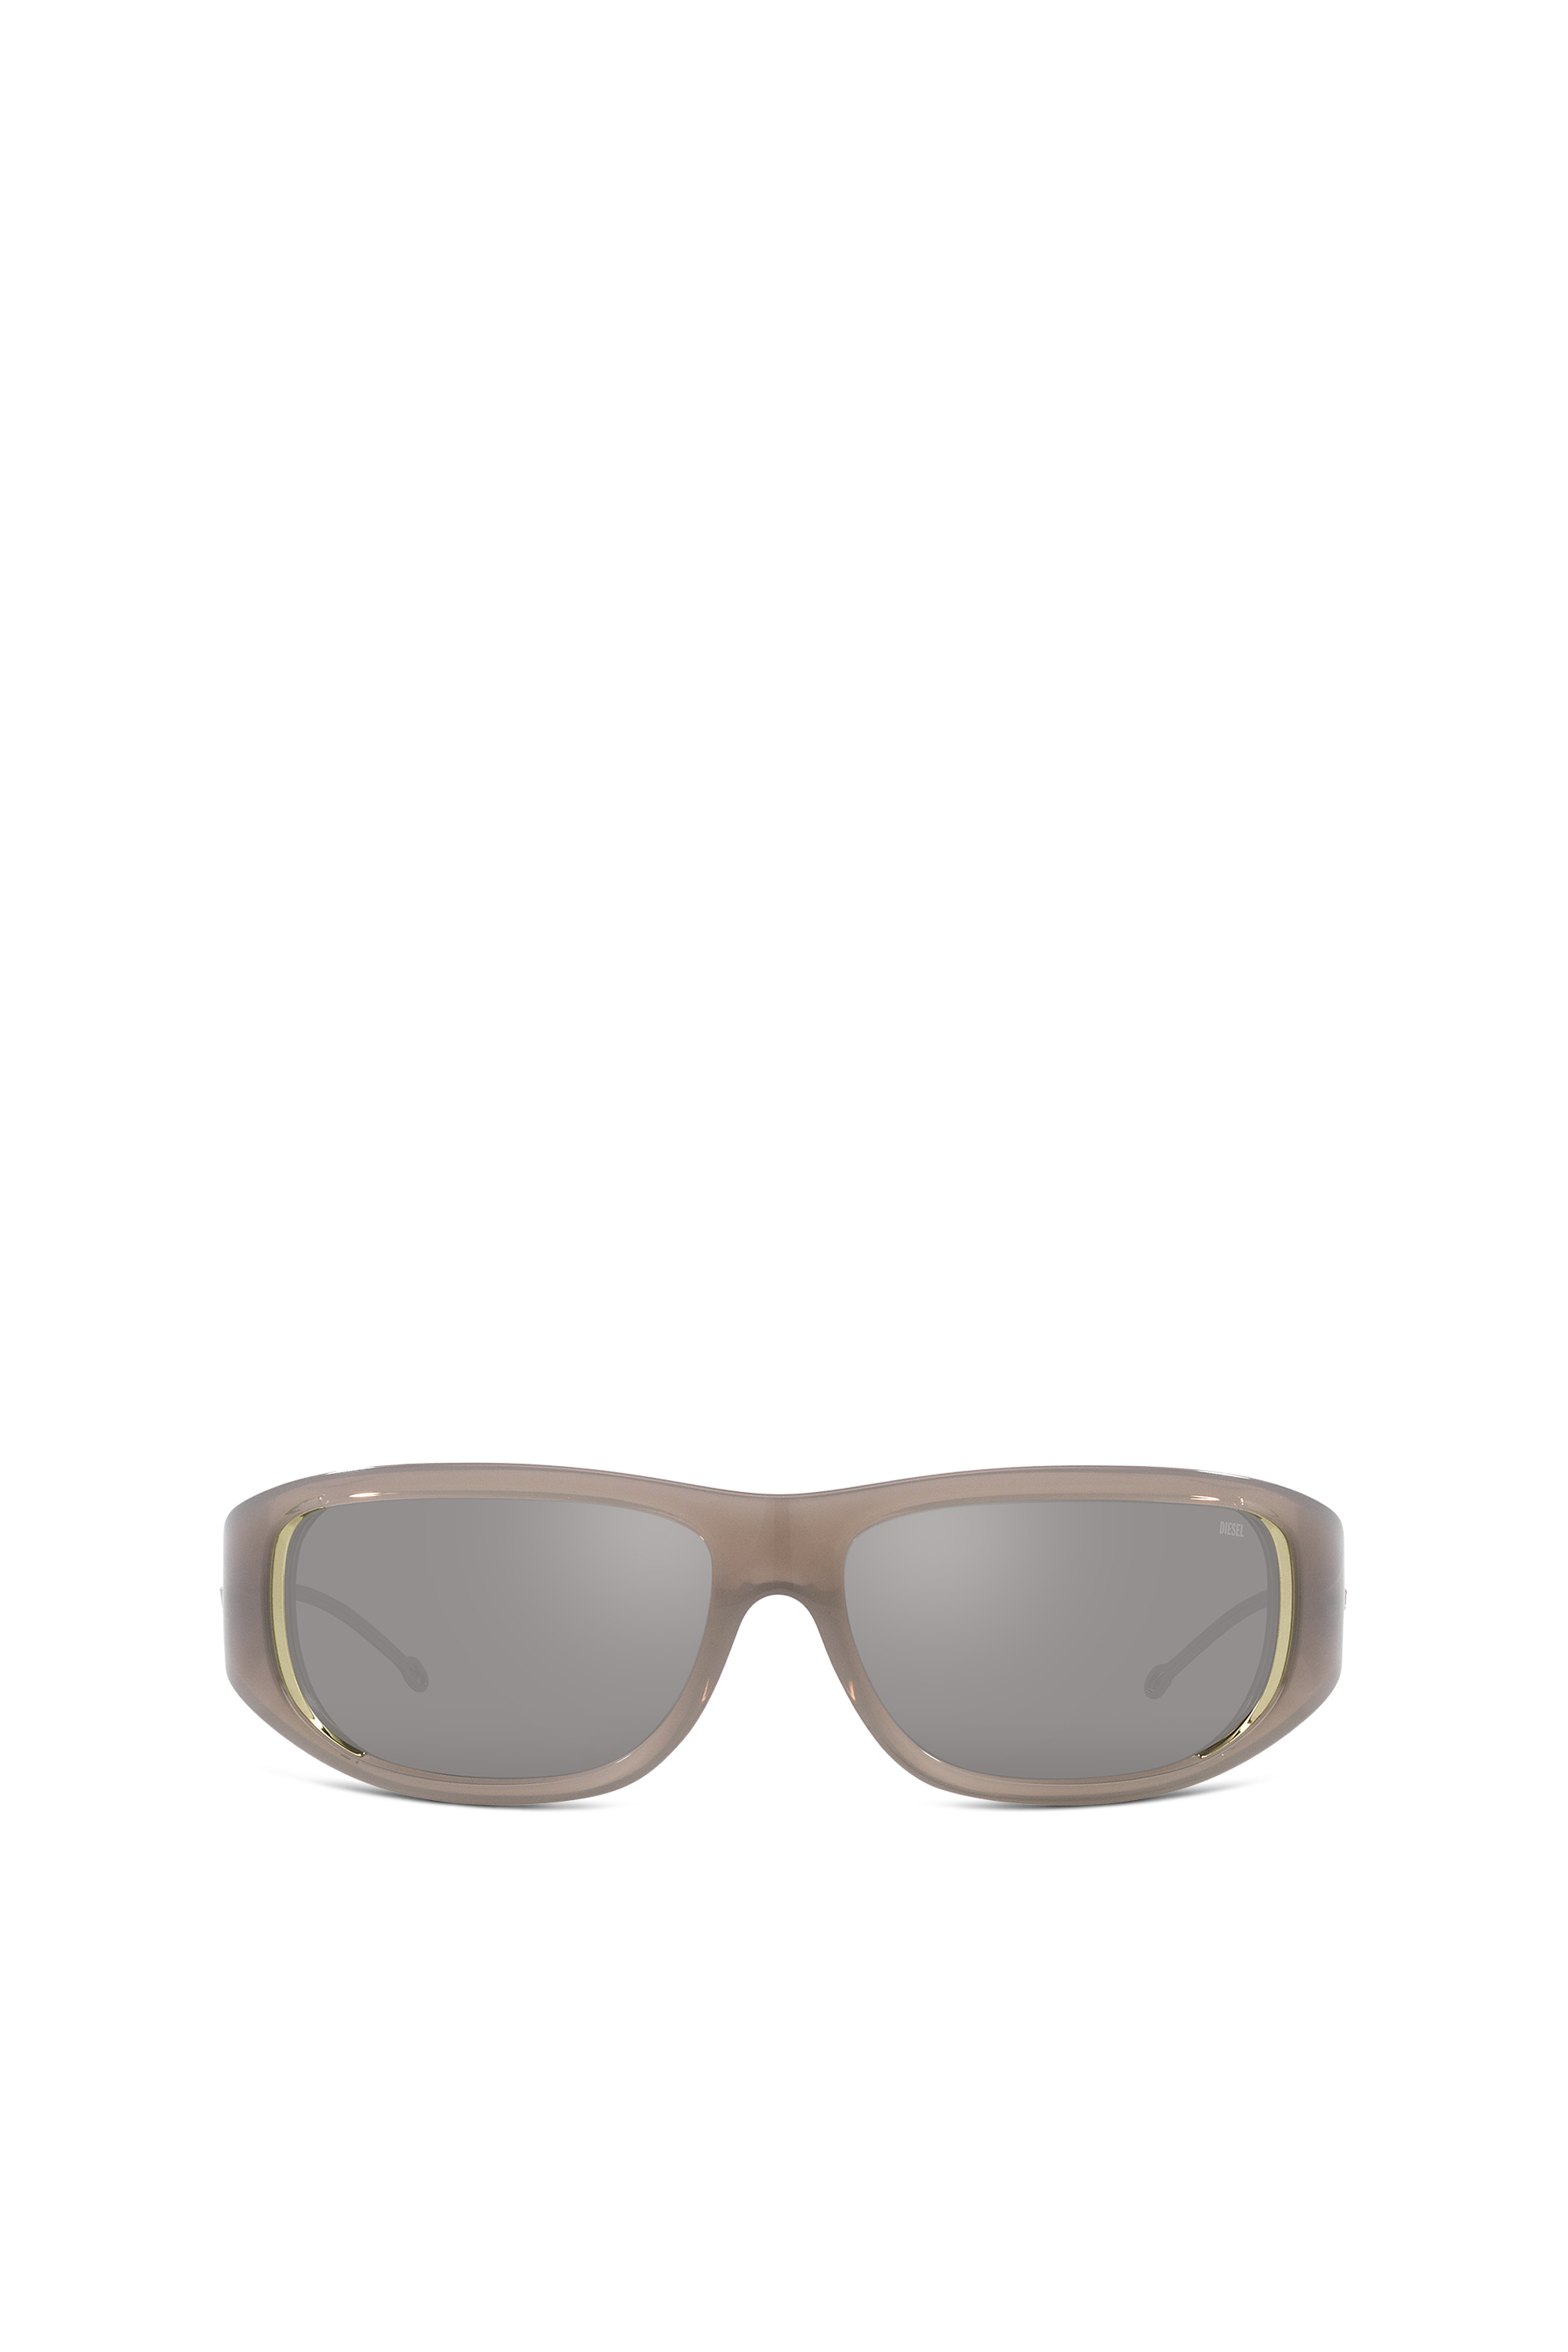 Diesel - Wraparound-Stil Brille - Sonnenbrille - Unisex - Grau